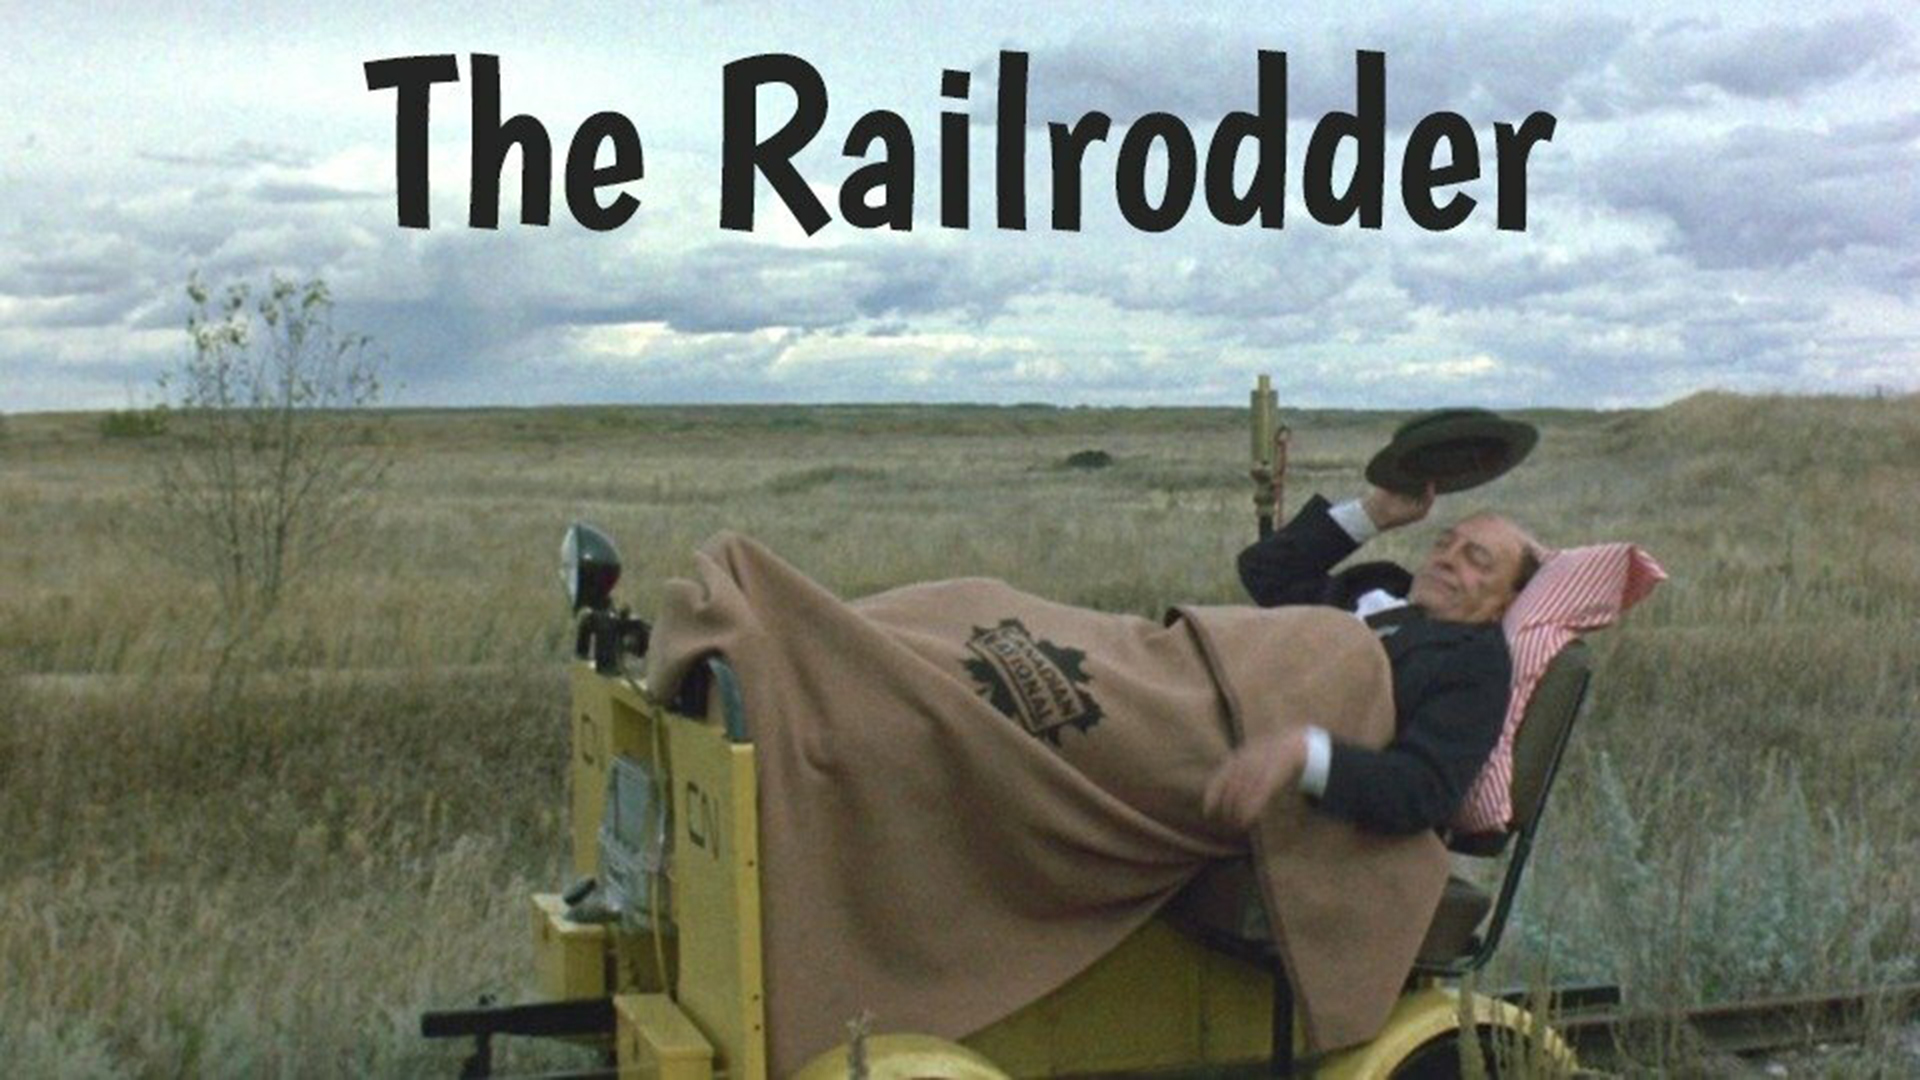 The Railrodder